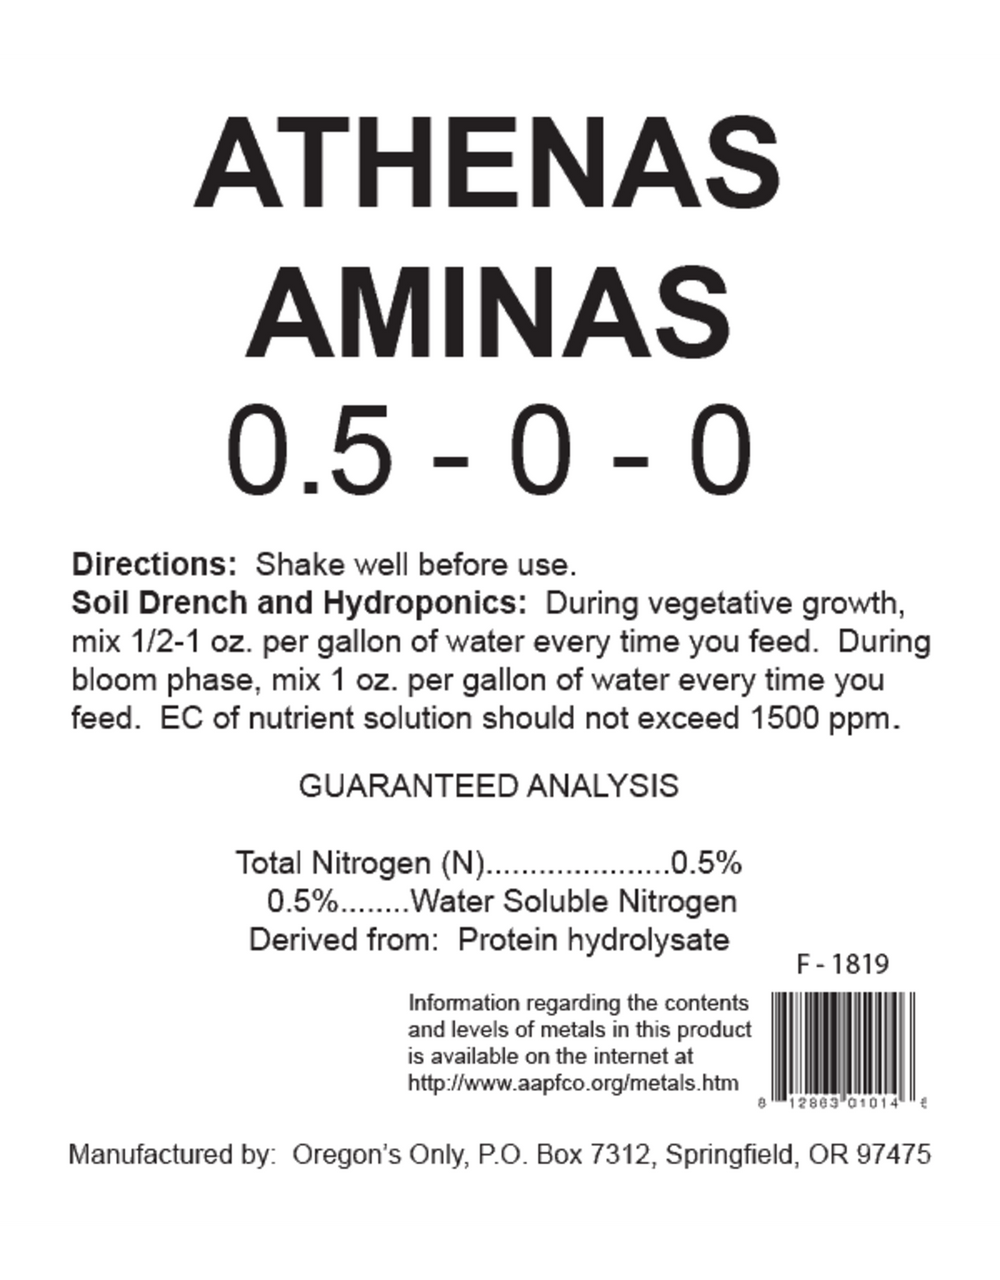 Athena's Aminas 55gal drum